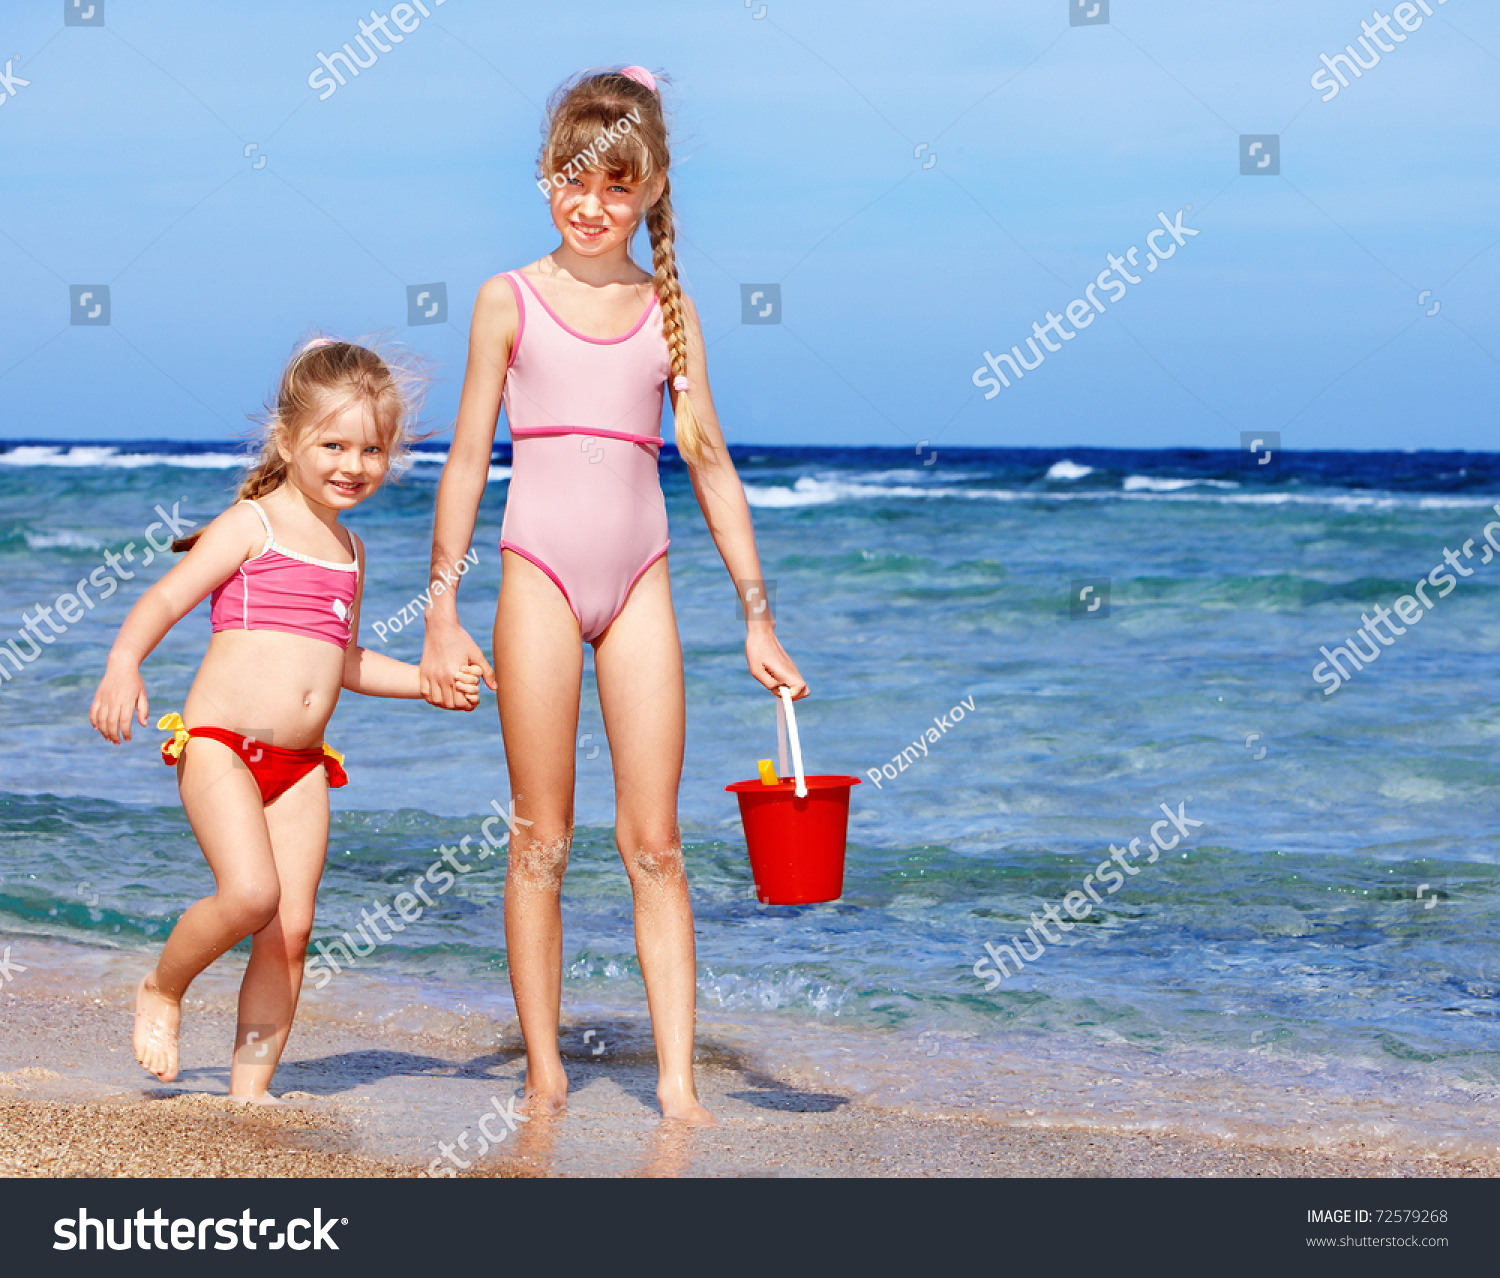 дети в купальниках на пляже